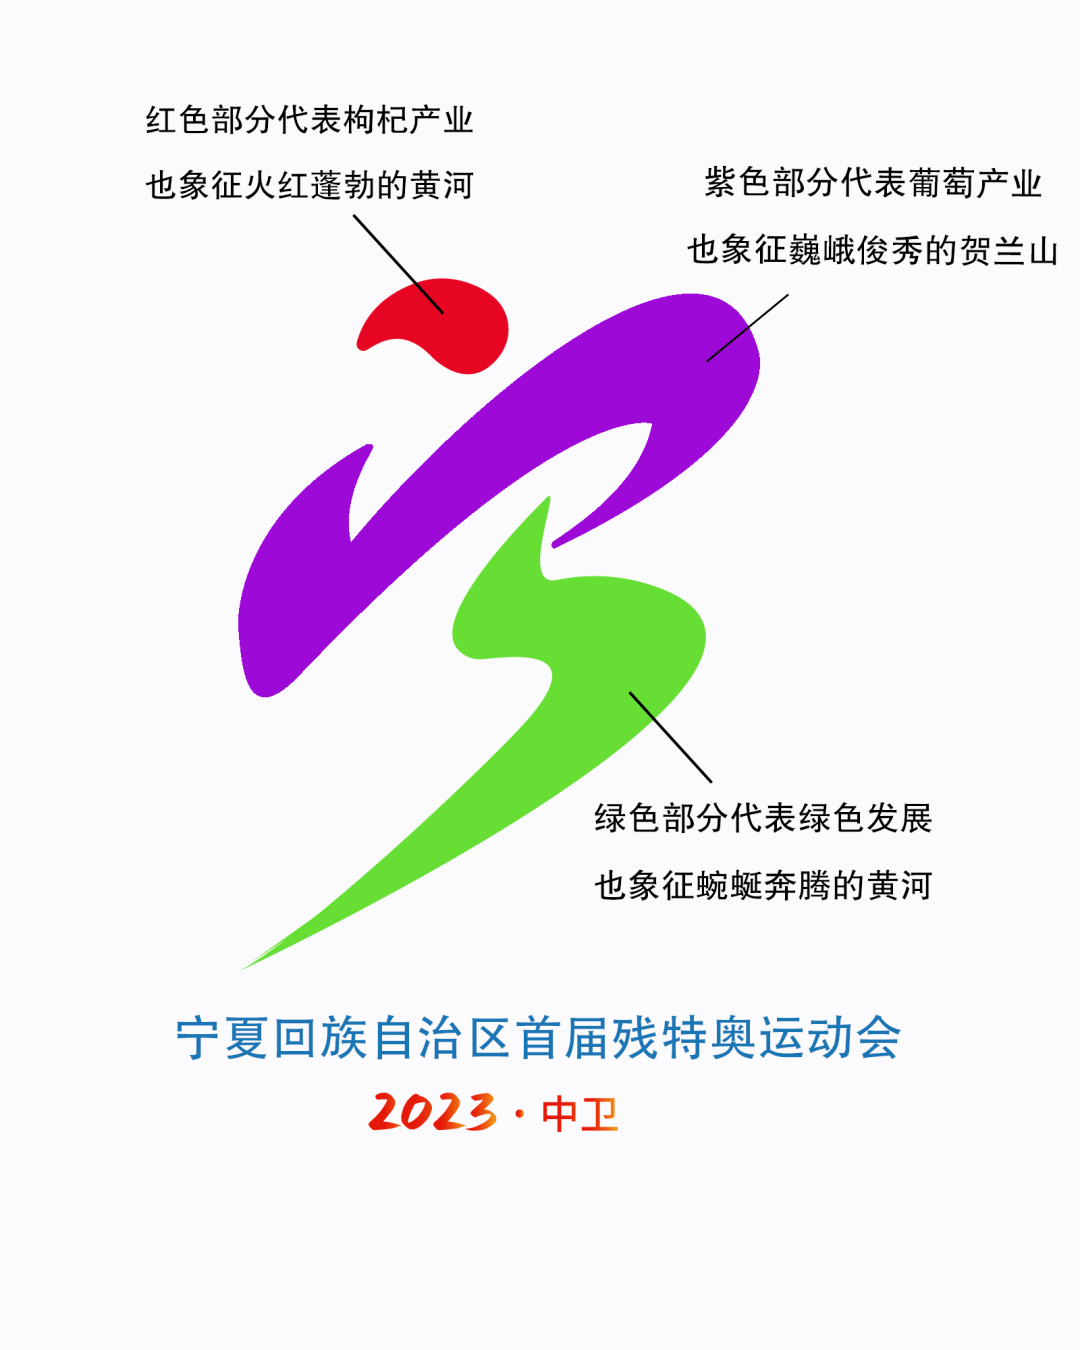 67图文并茂,了解宁夏回族自治区首届残特奥运动会会徽,吉祥物,会歌